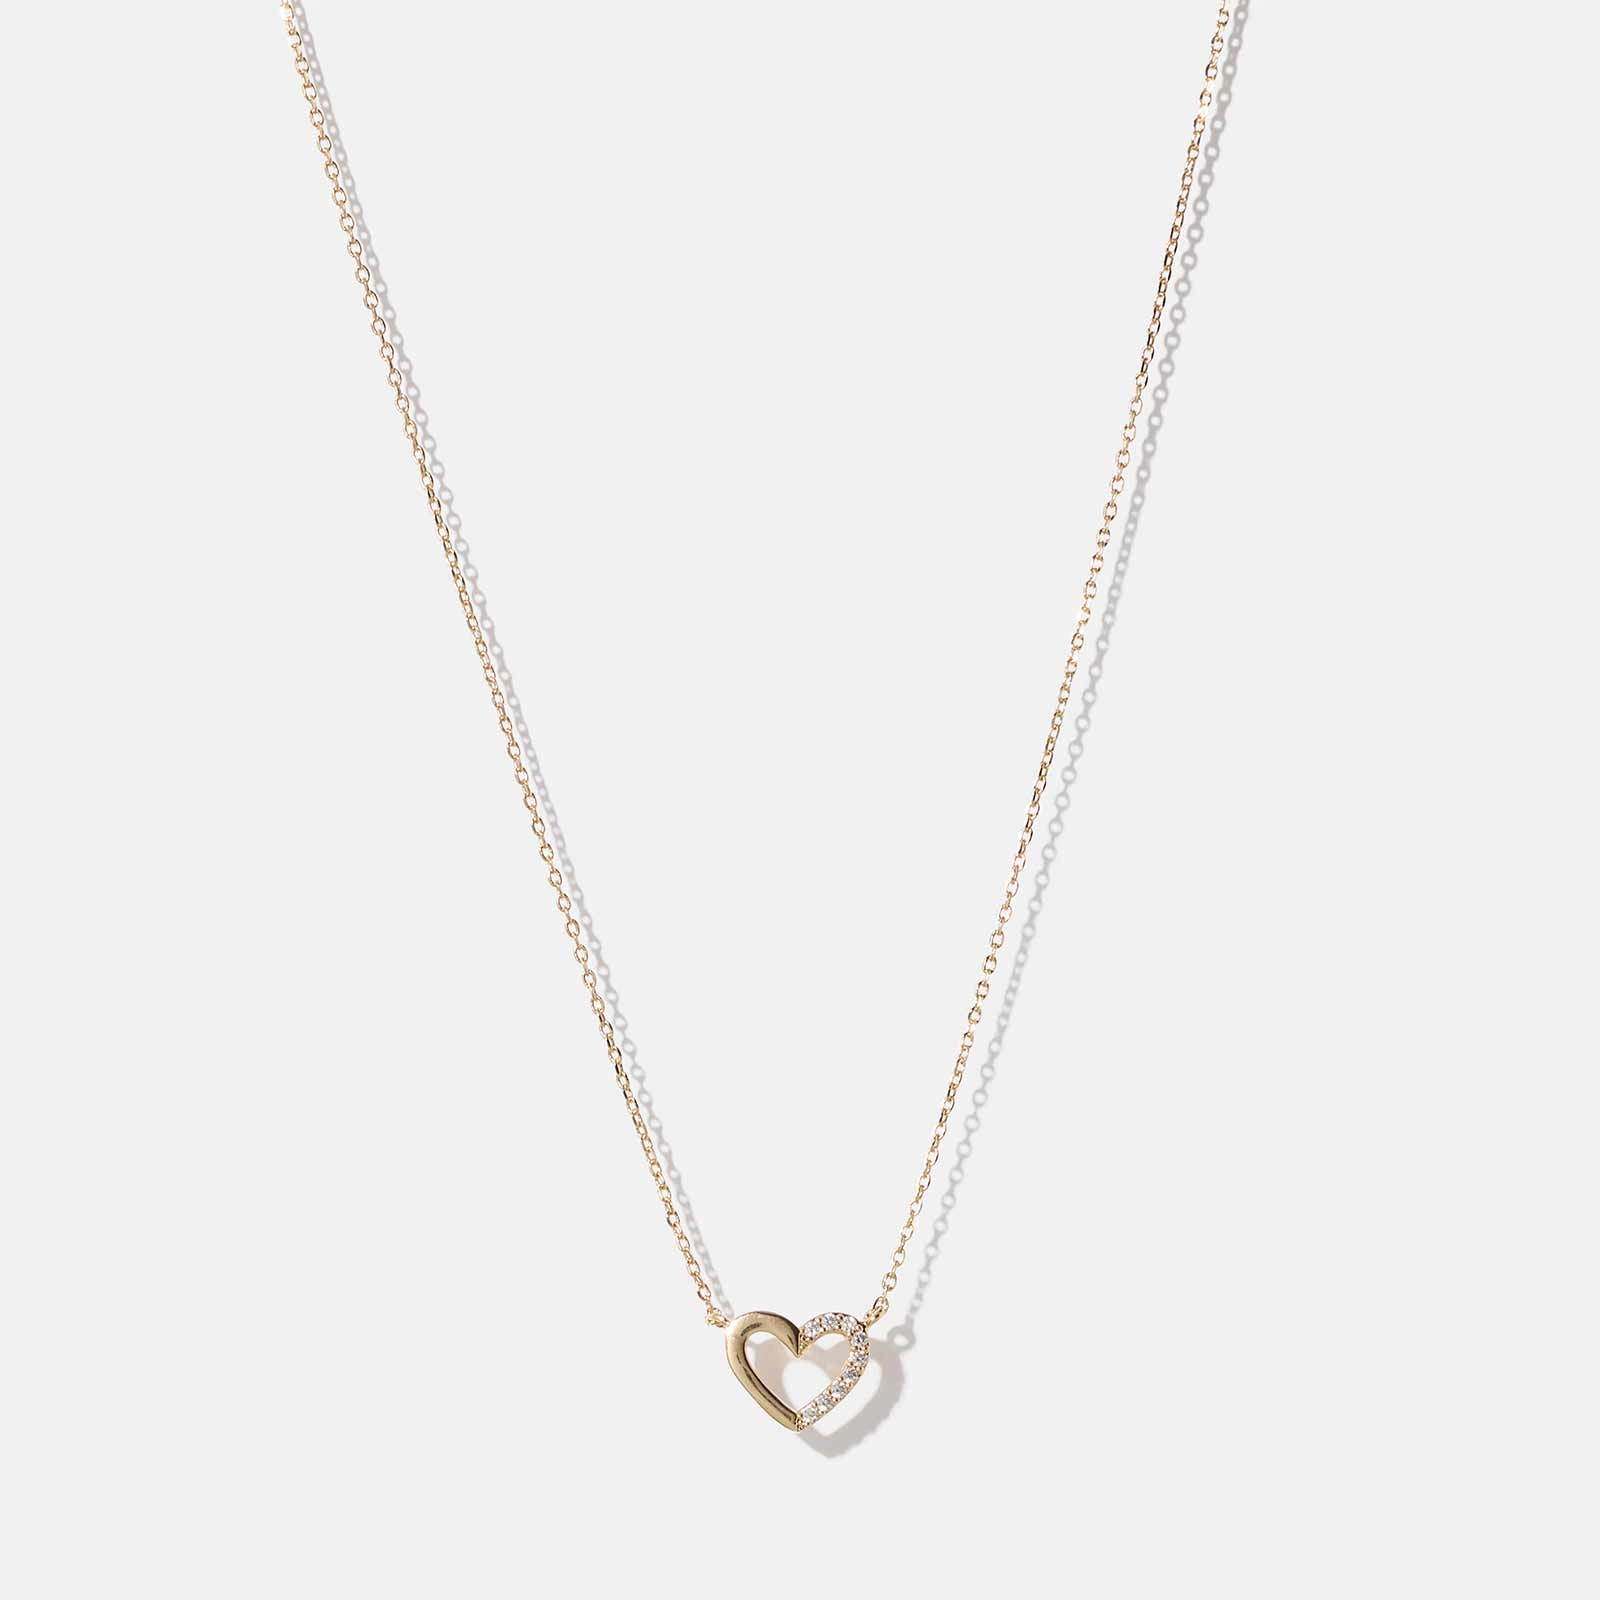 18k guldpläterat halsband - berlock hjärta med vita stenar, 40+5cm